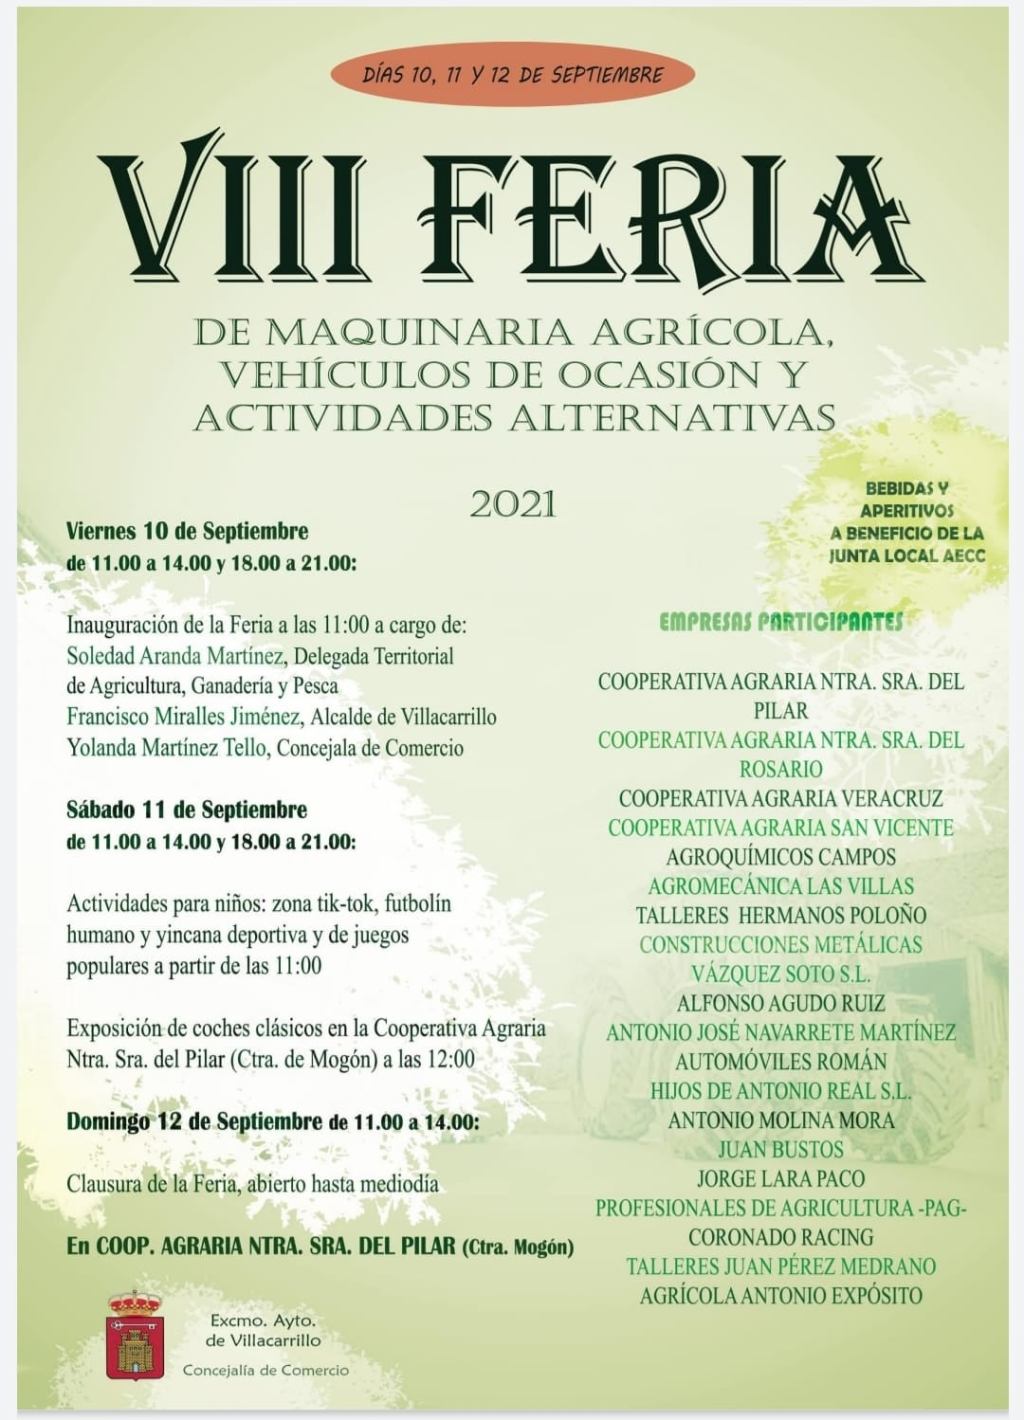 Presentada la nueva edición de la Feria de Maquinaria Agrícola y Exposición de Coches Clásicos